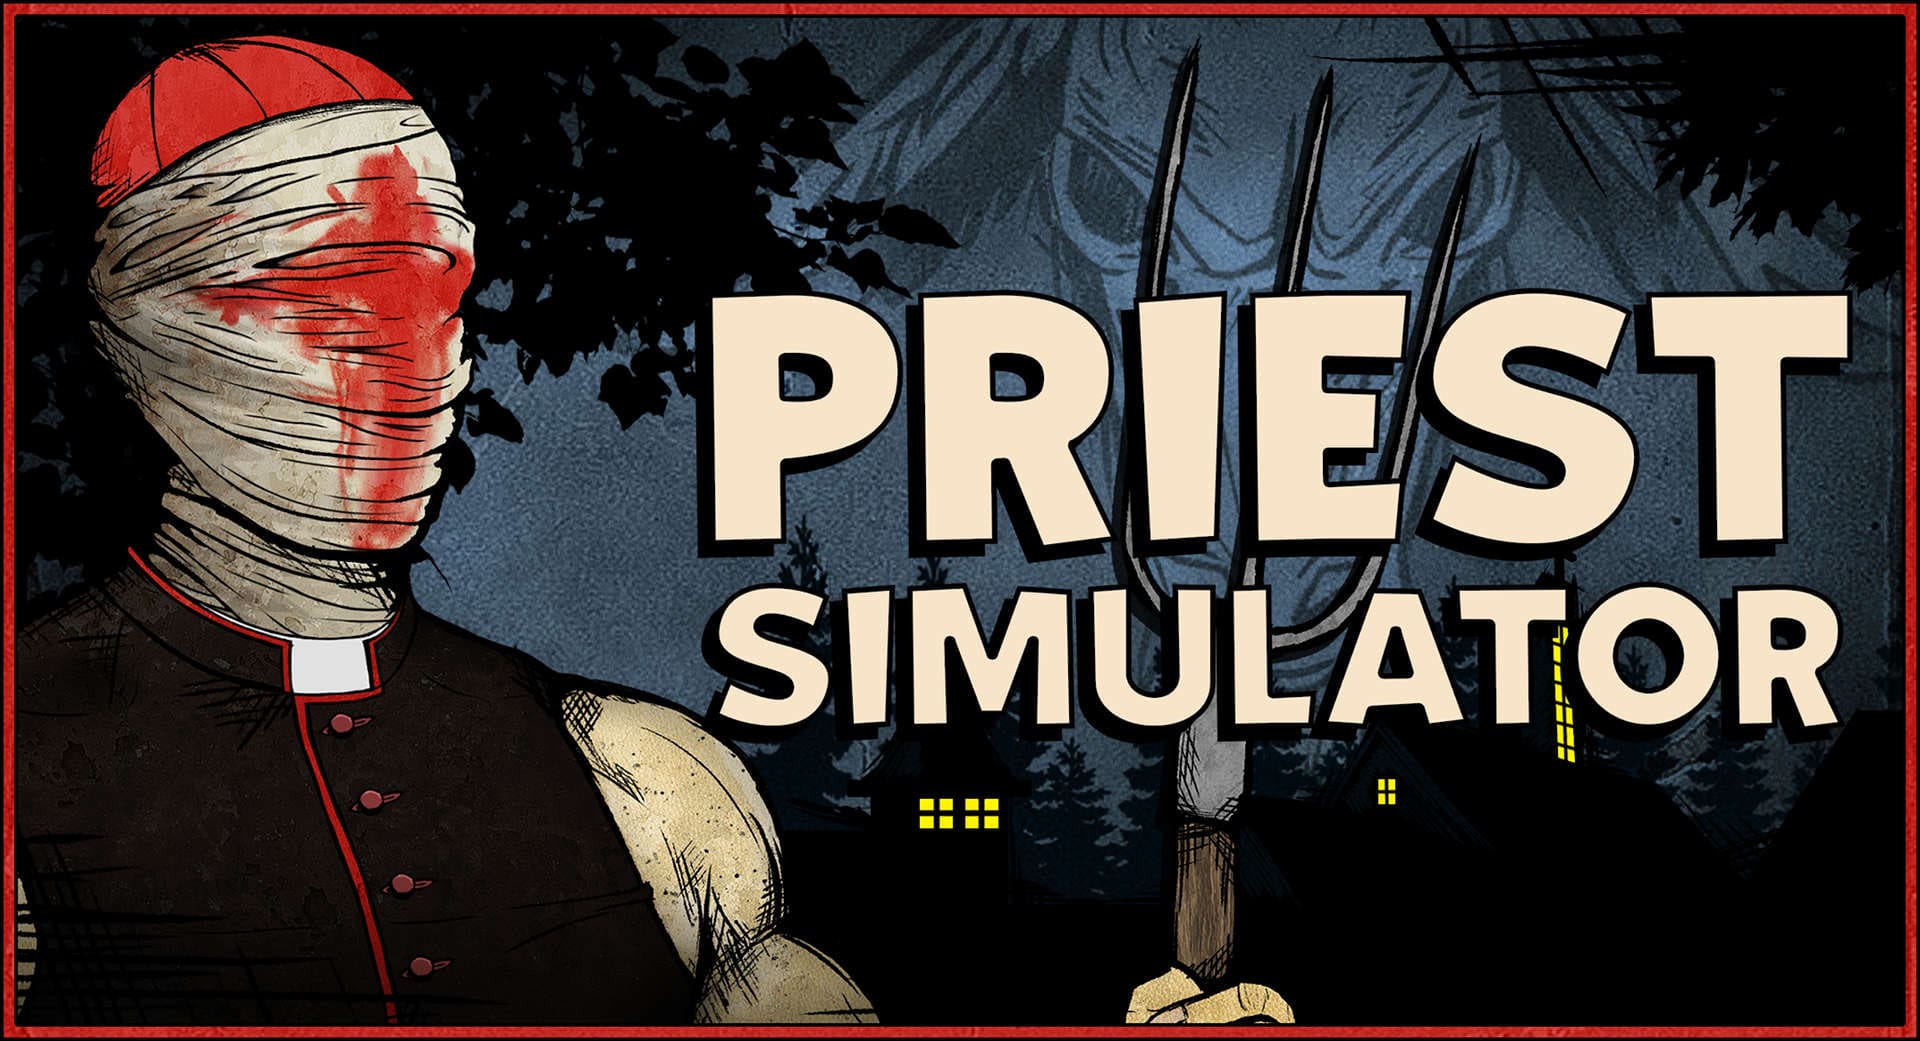 Priest Simulator press material